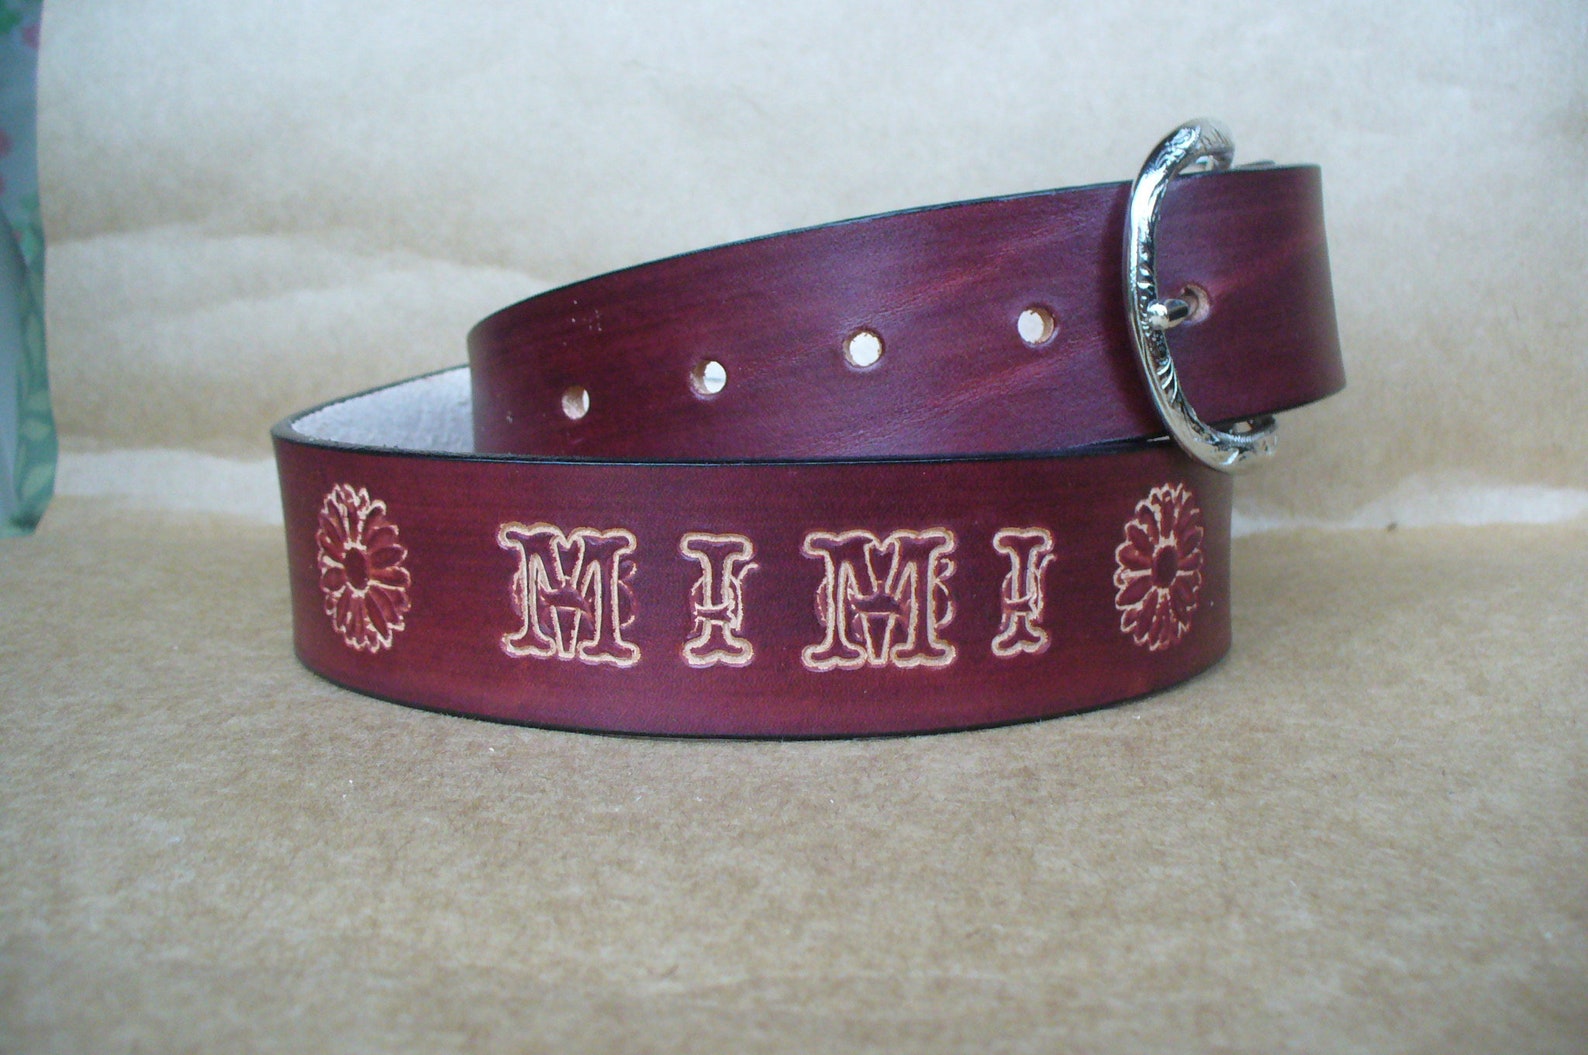 Cowboy Belts Heavy Duty Leather Belt Cowboy Belts for Men | Etsy